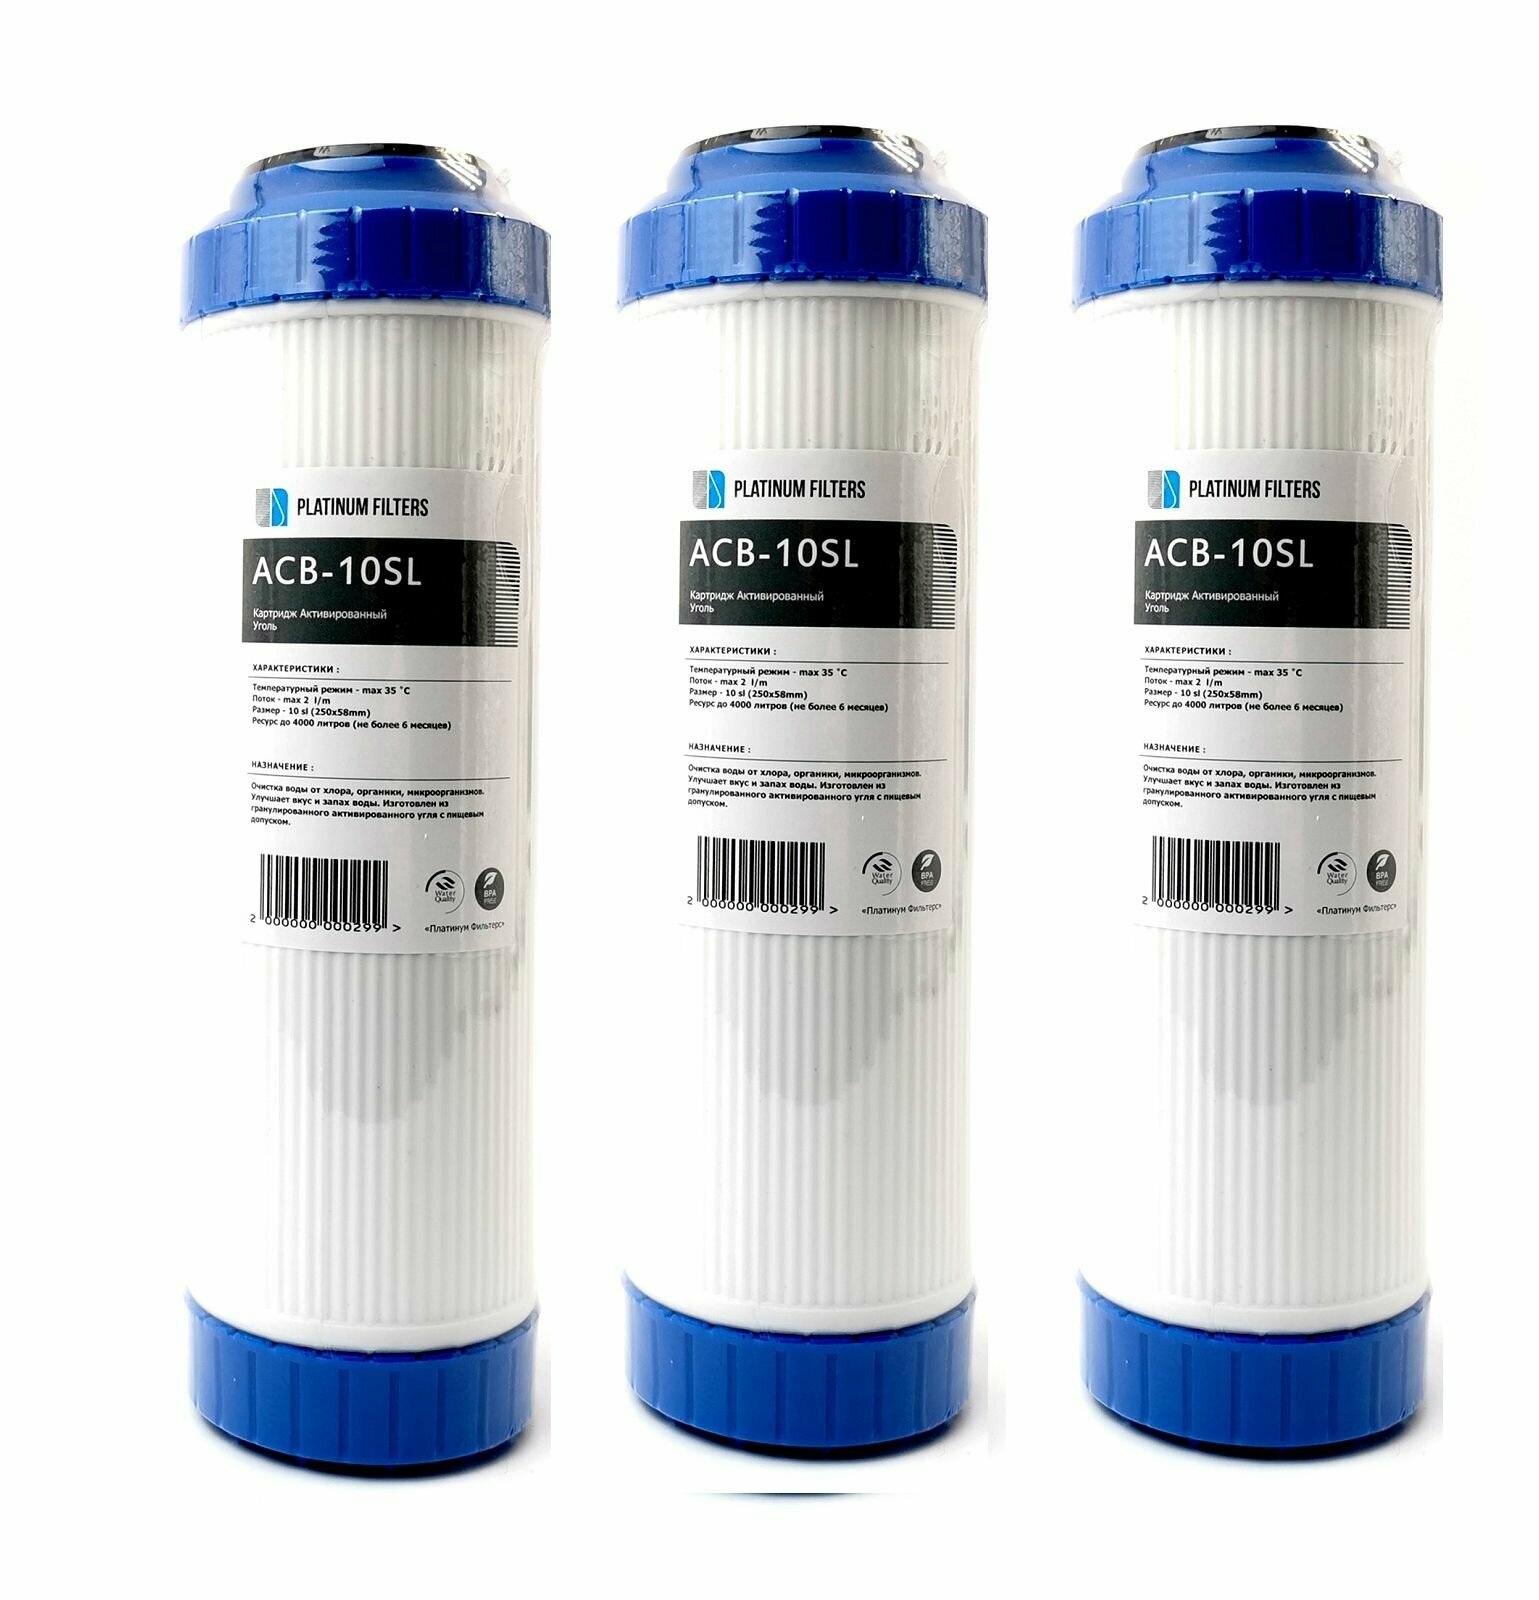 Картридж из гранулированного угля Platinum Filters ACB-10SL комплект из 3 штук